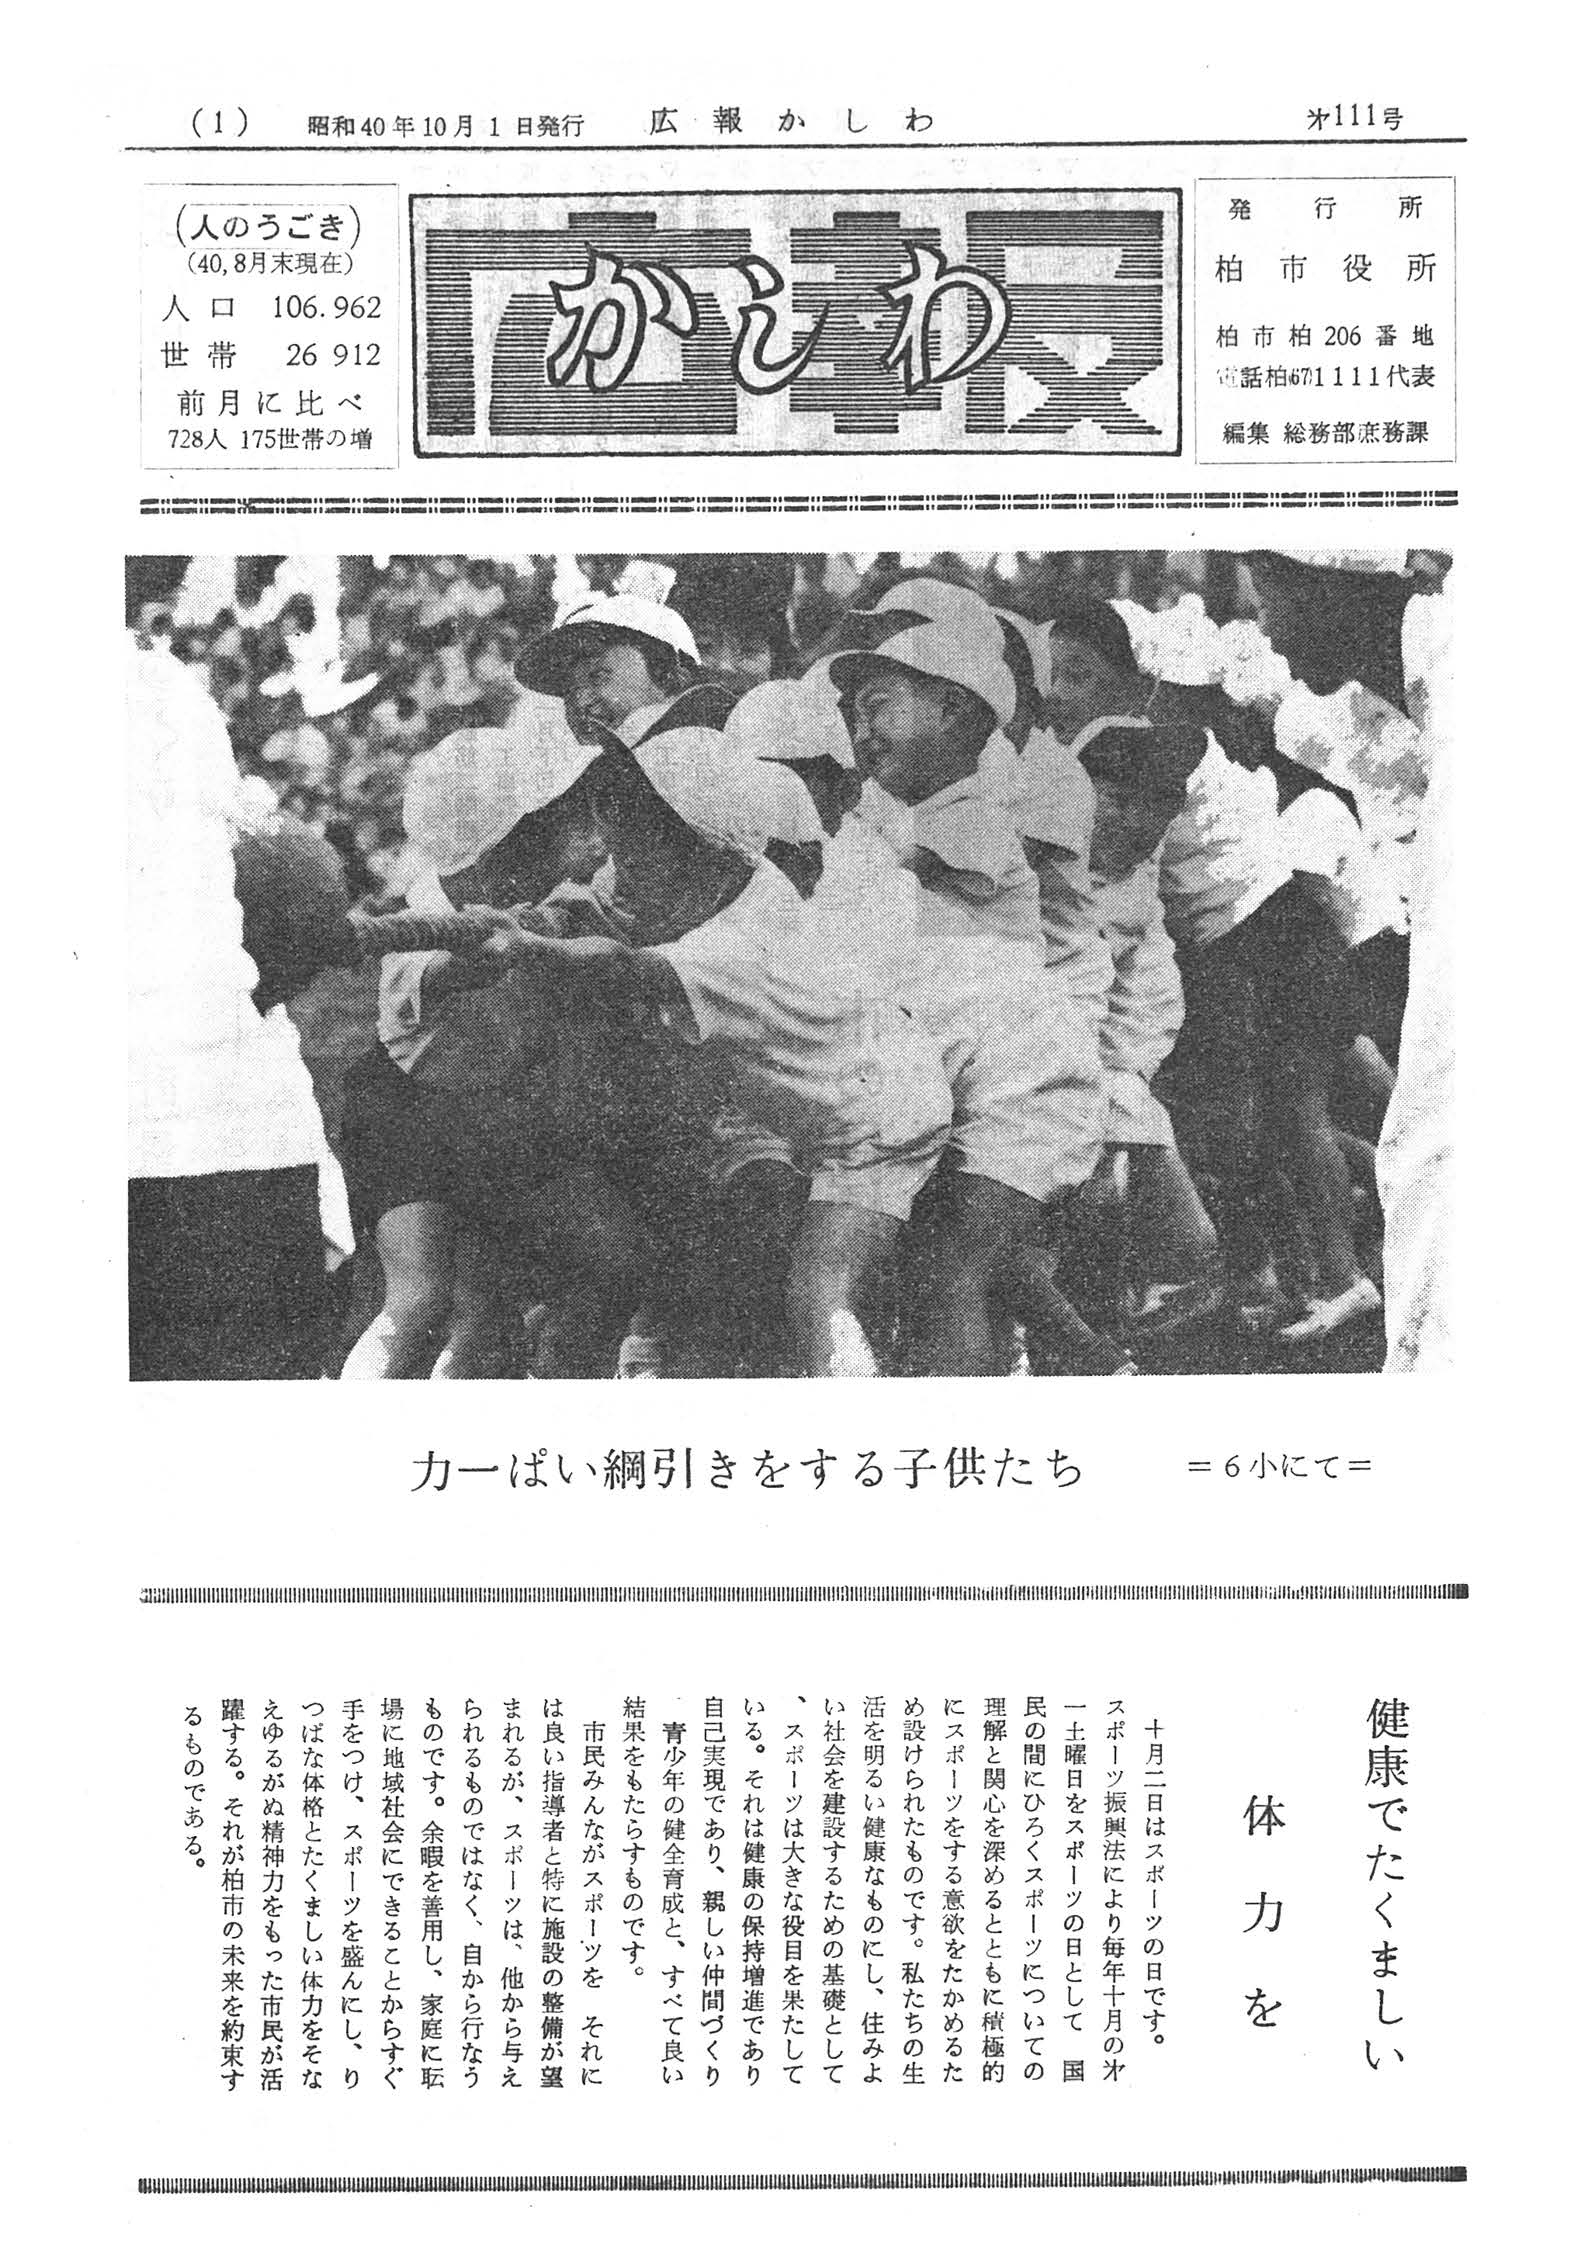 広報かしわ　昭和40年10月1日発行　111号